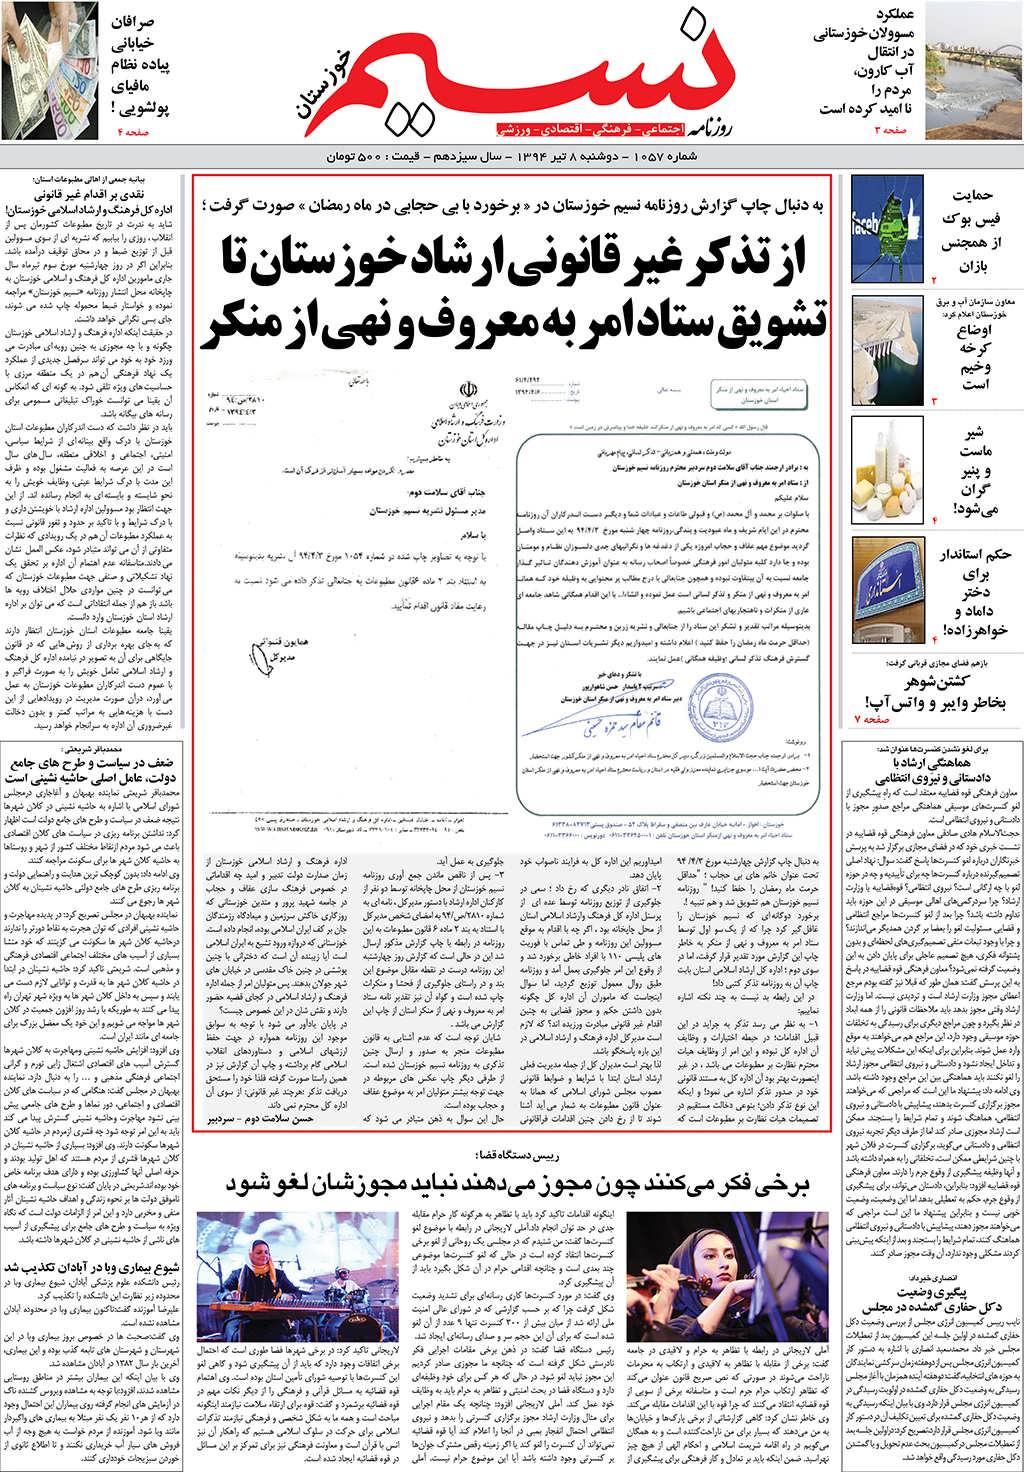 صفحه اصلی روزنامه نسیم شماره 1057